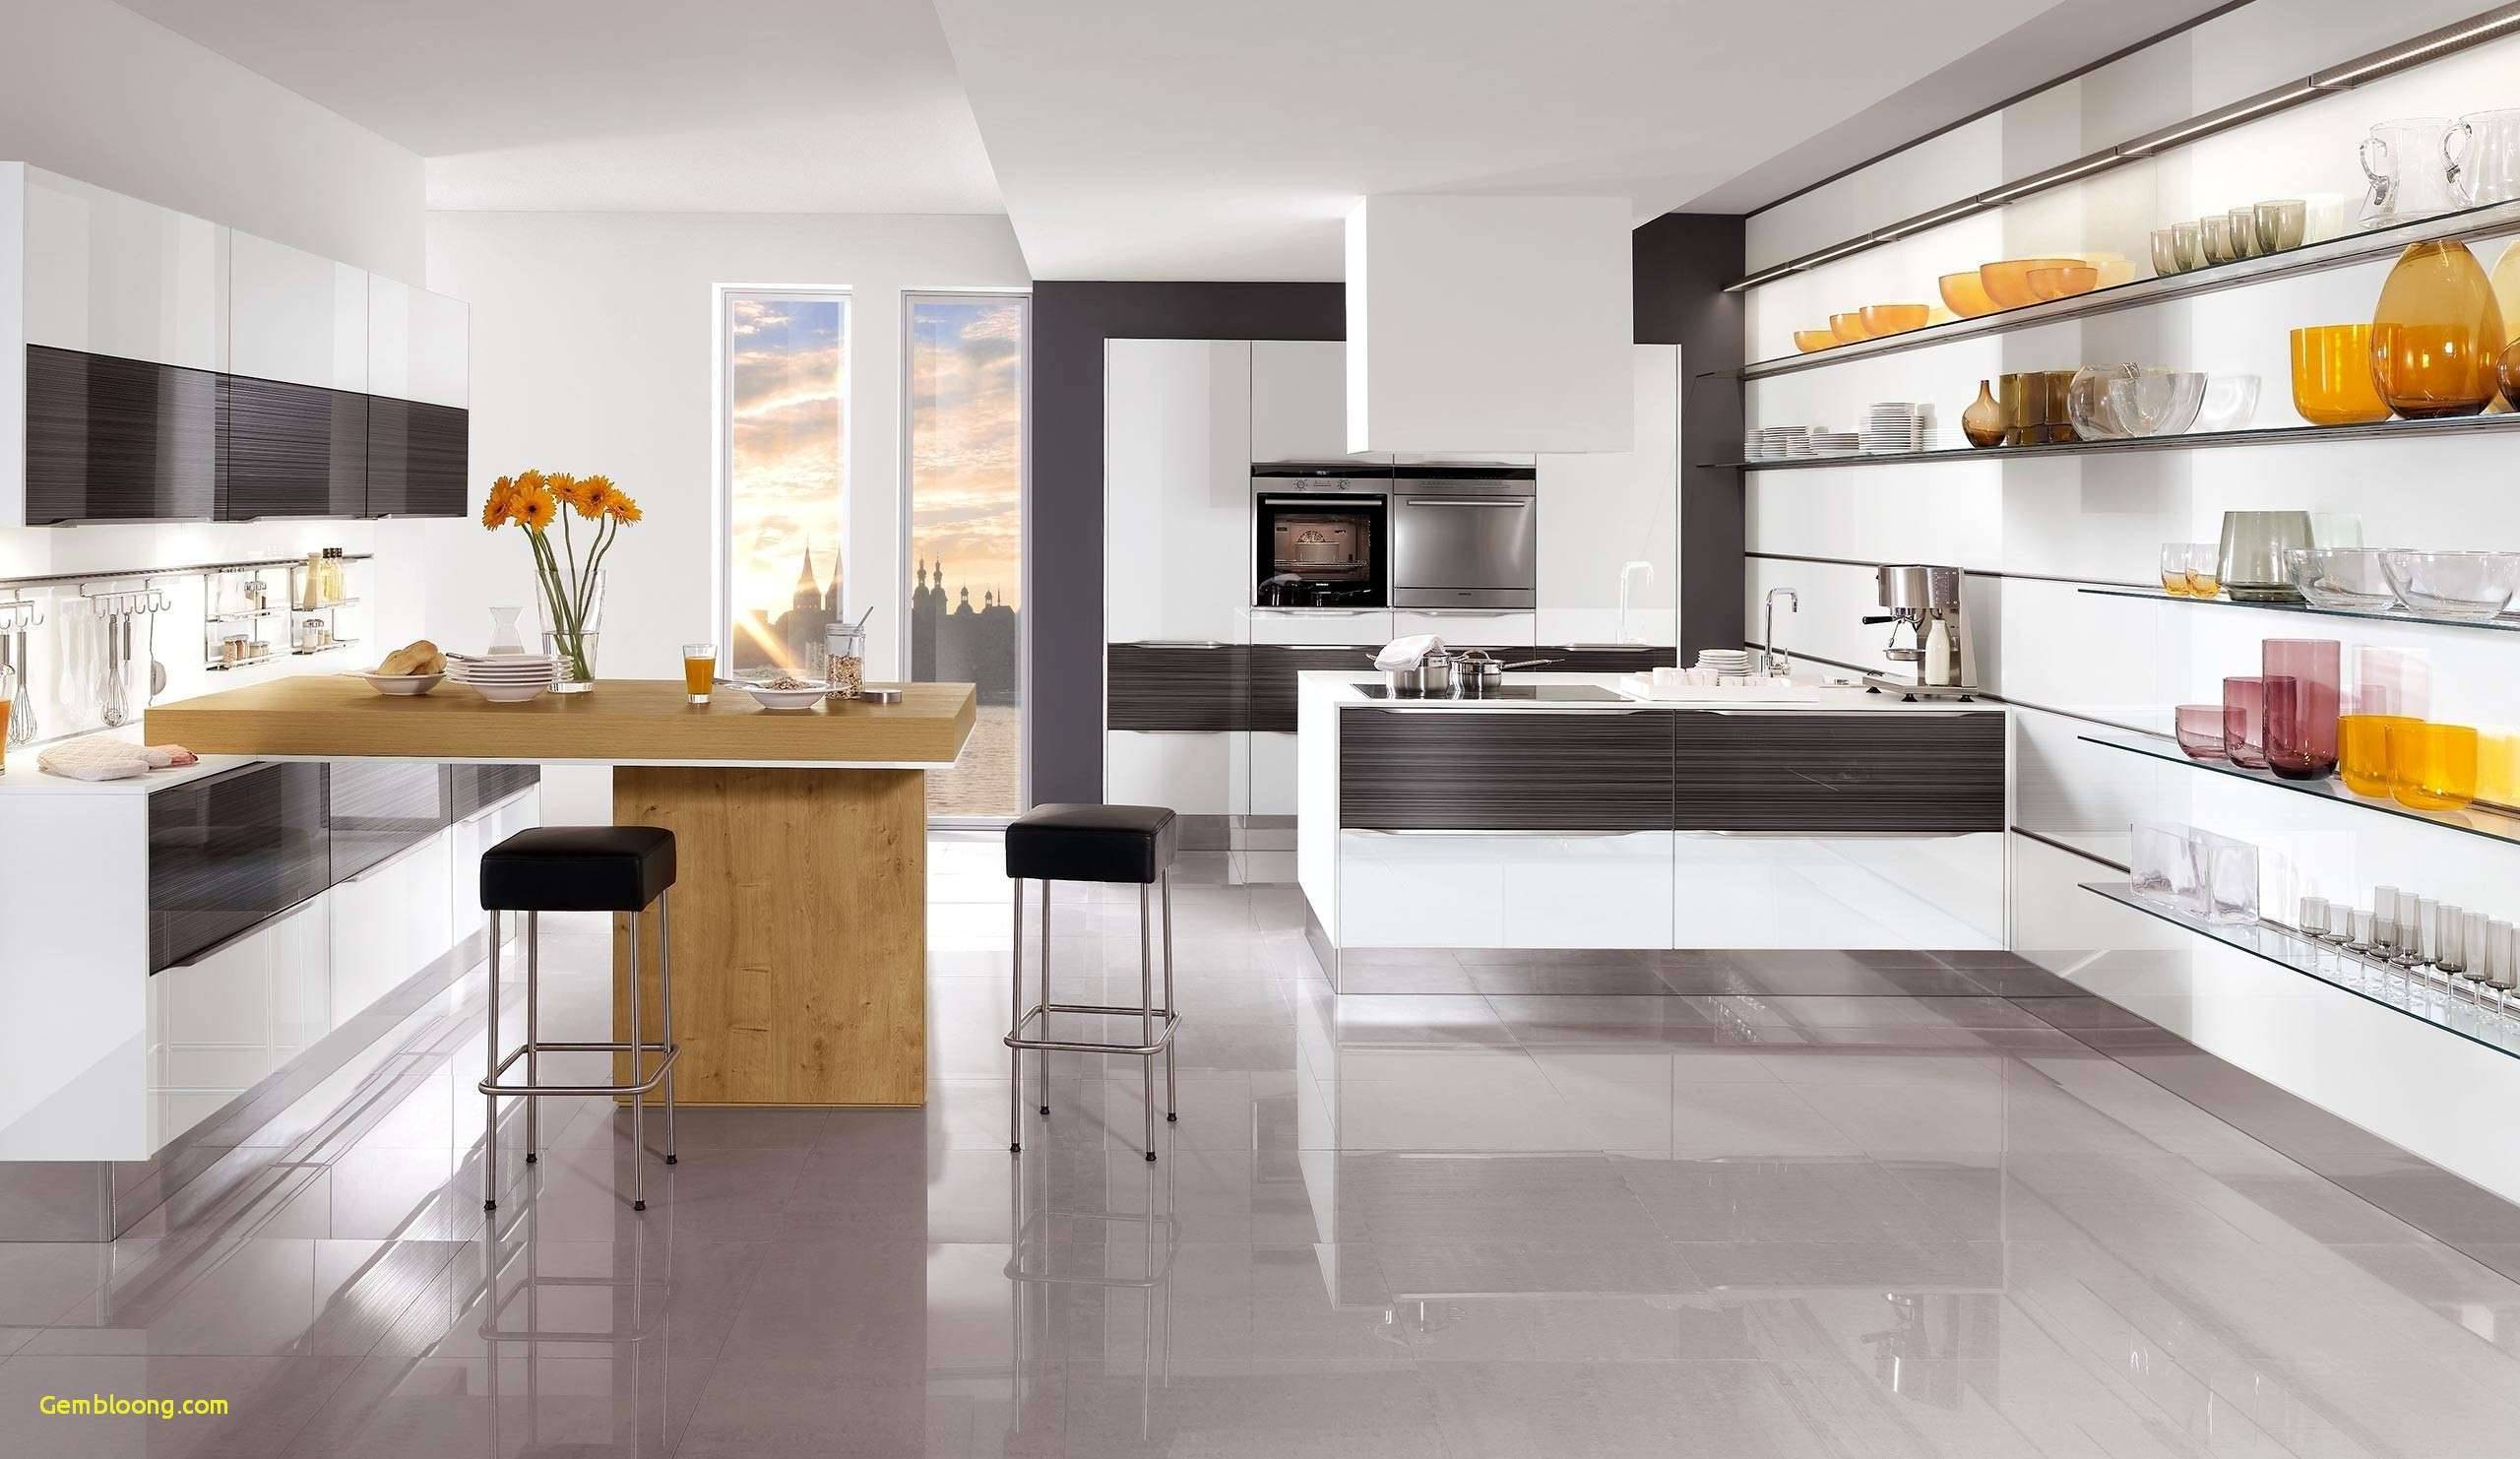 Deko Shop Günstig Schön Luxury Küche Und Wohnzimmer In Einem Raum Modern Concept